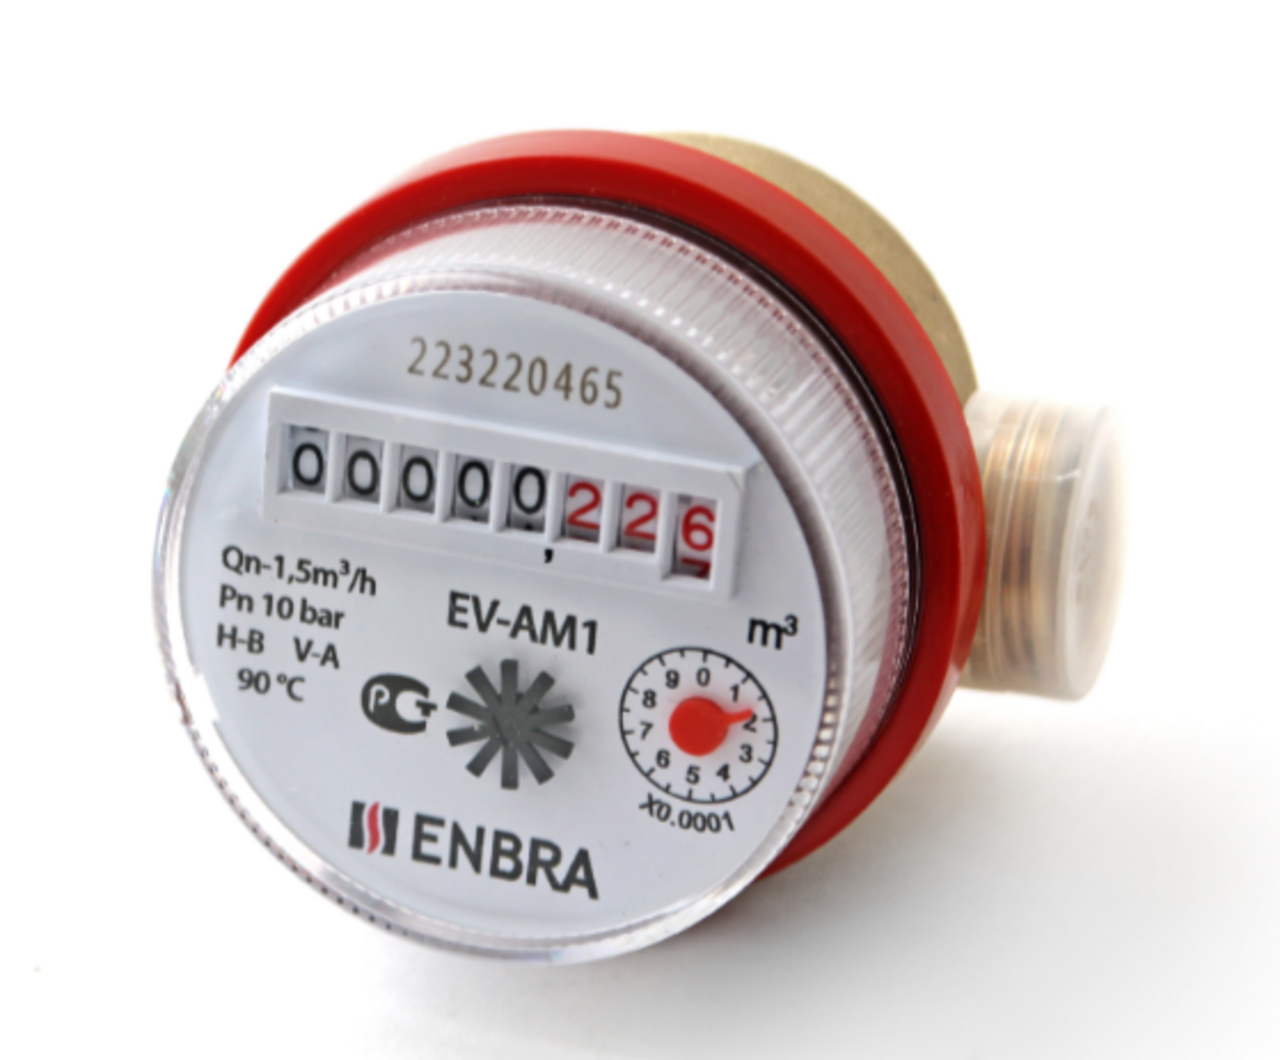 Счётчик учёта горячей воды ENBRA EV-AM1 L110/80 D15 B, без сгонов